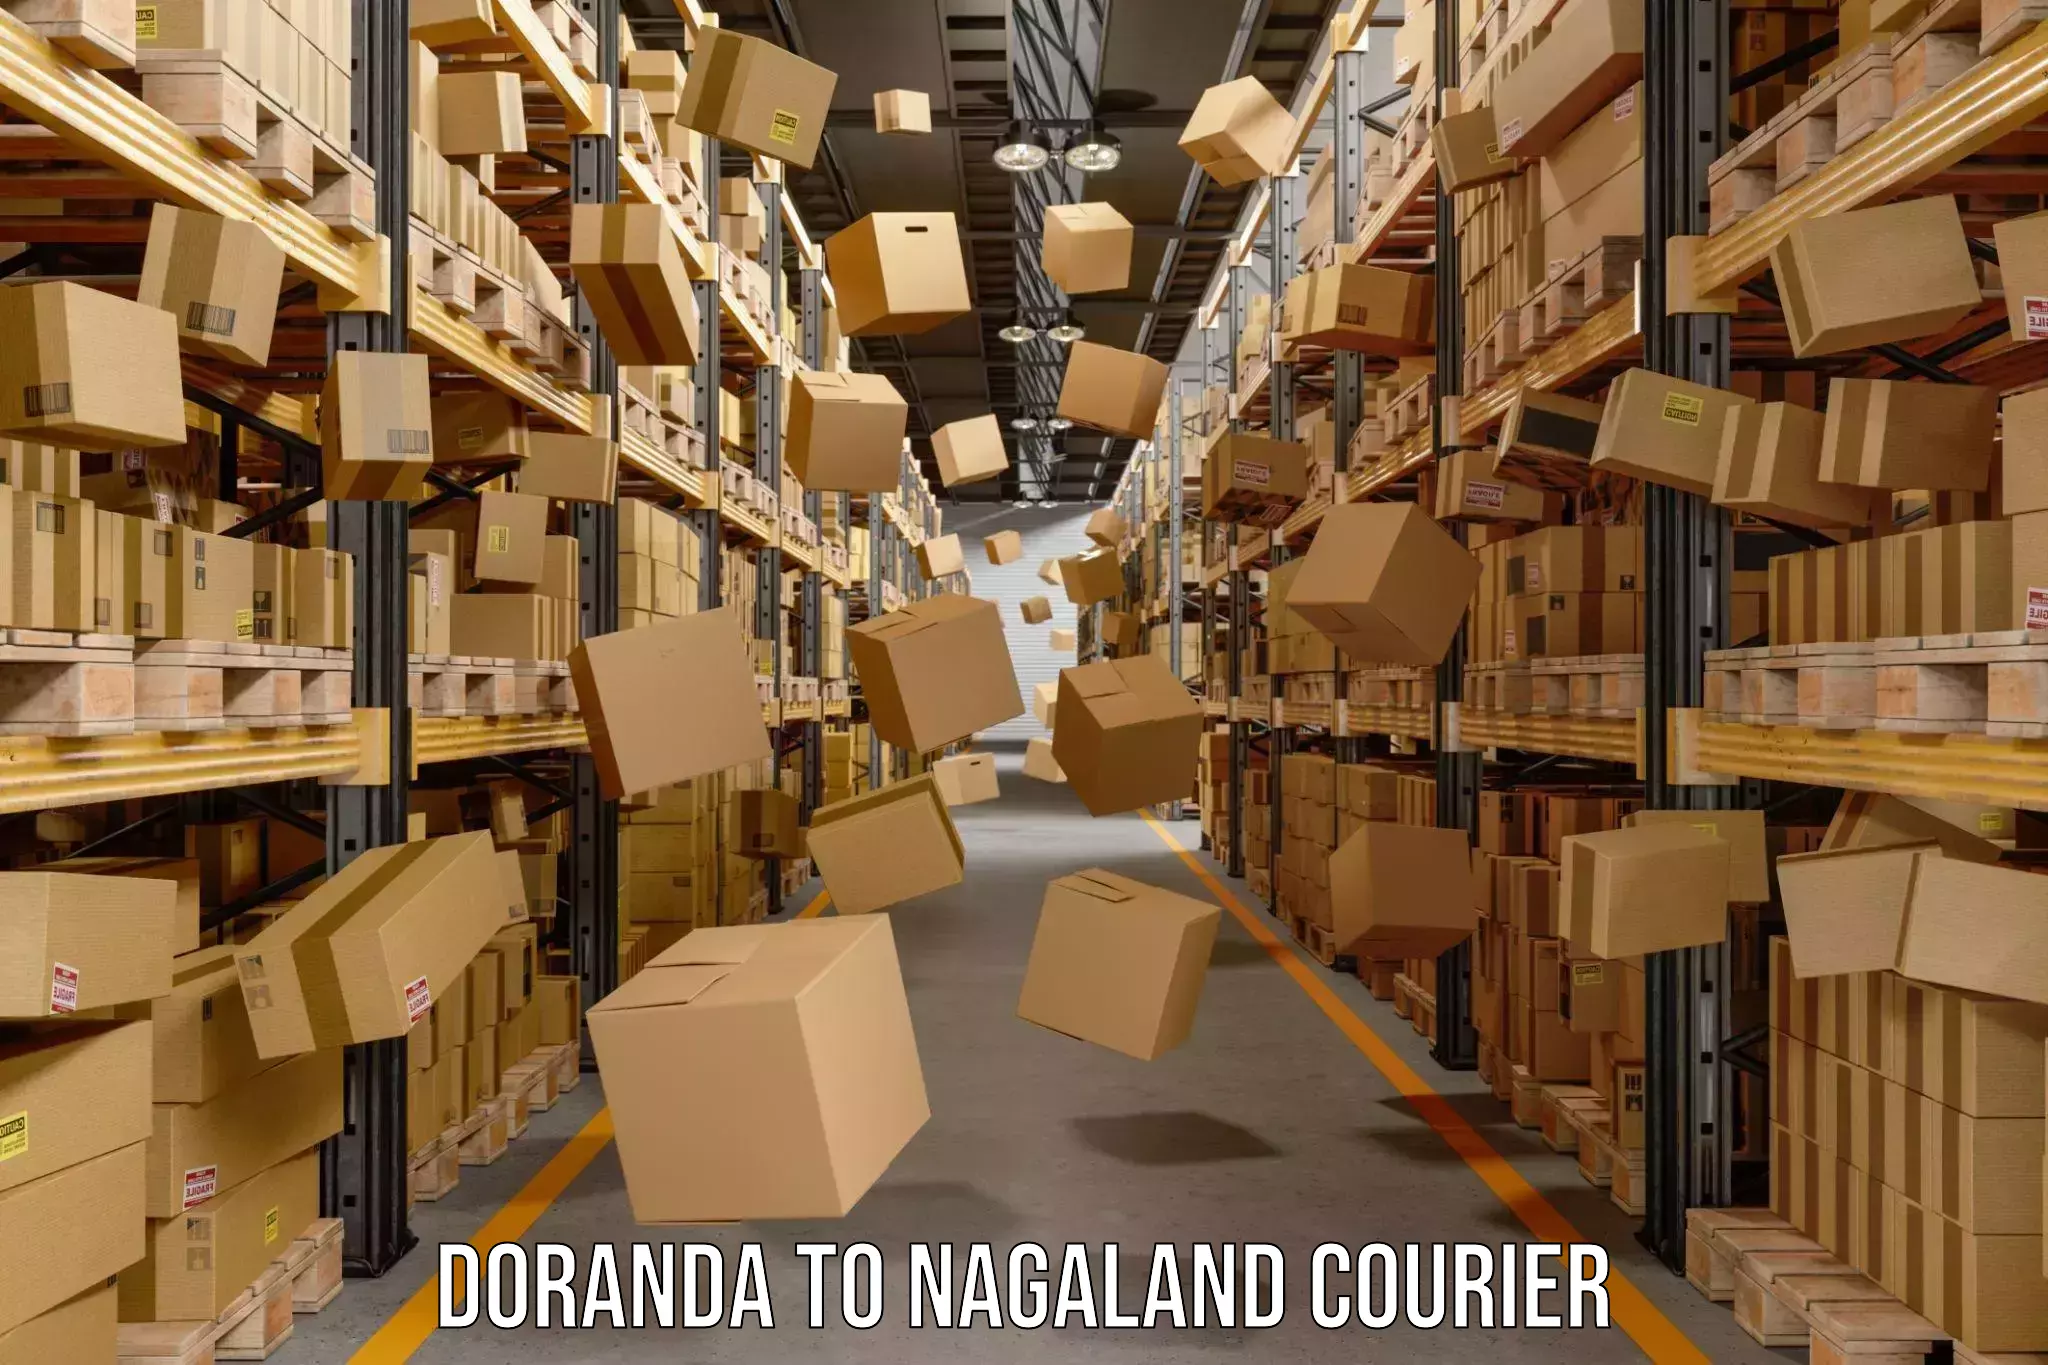 Reliable courier service Doranda to Dimapur